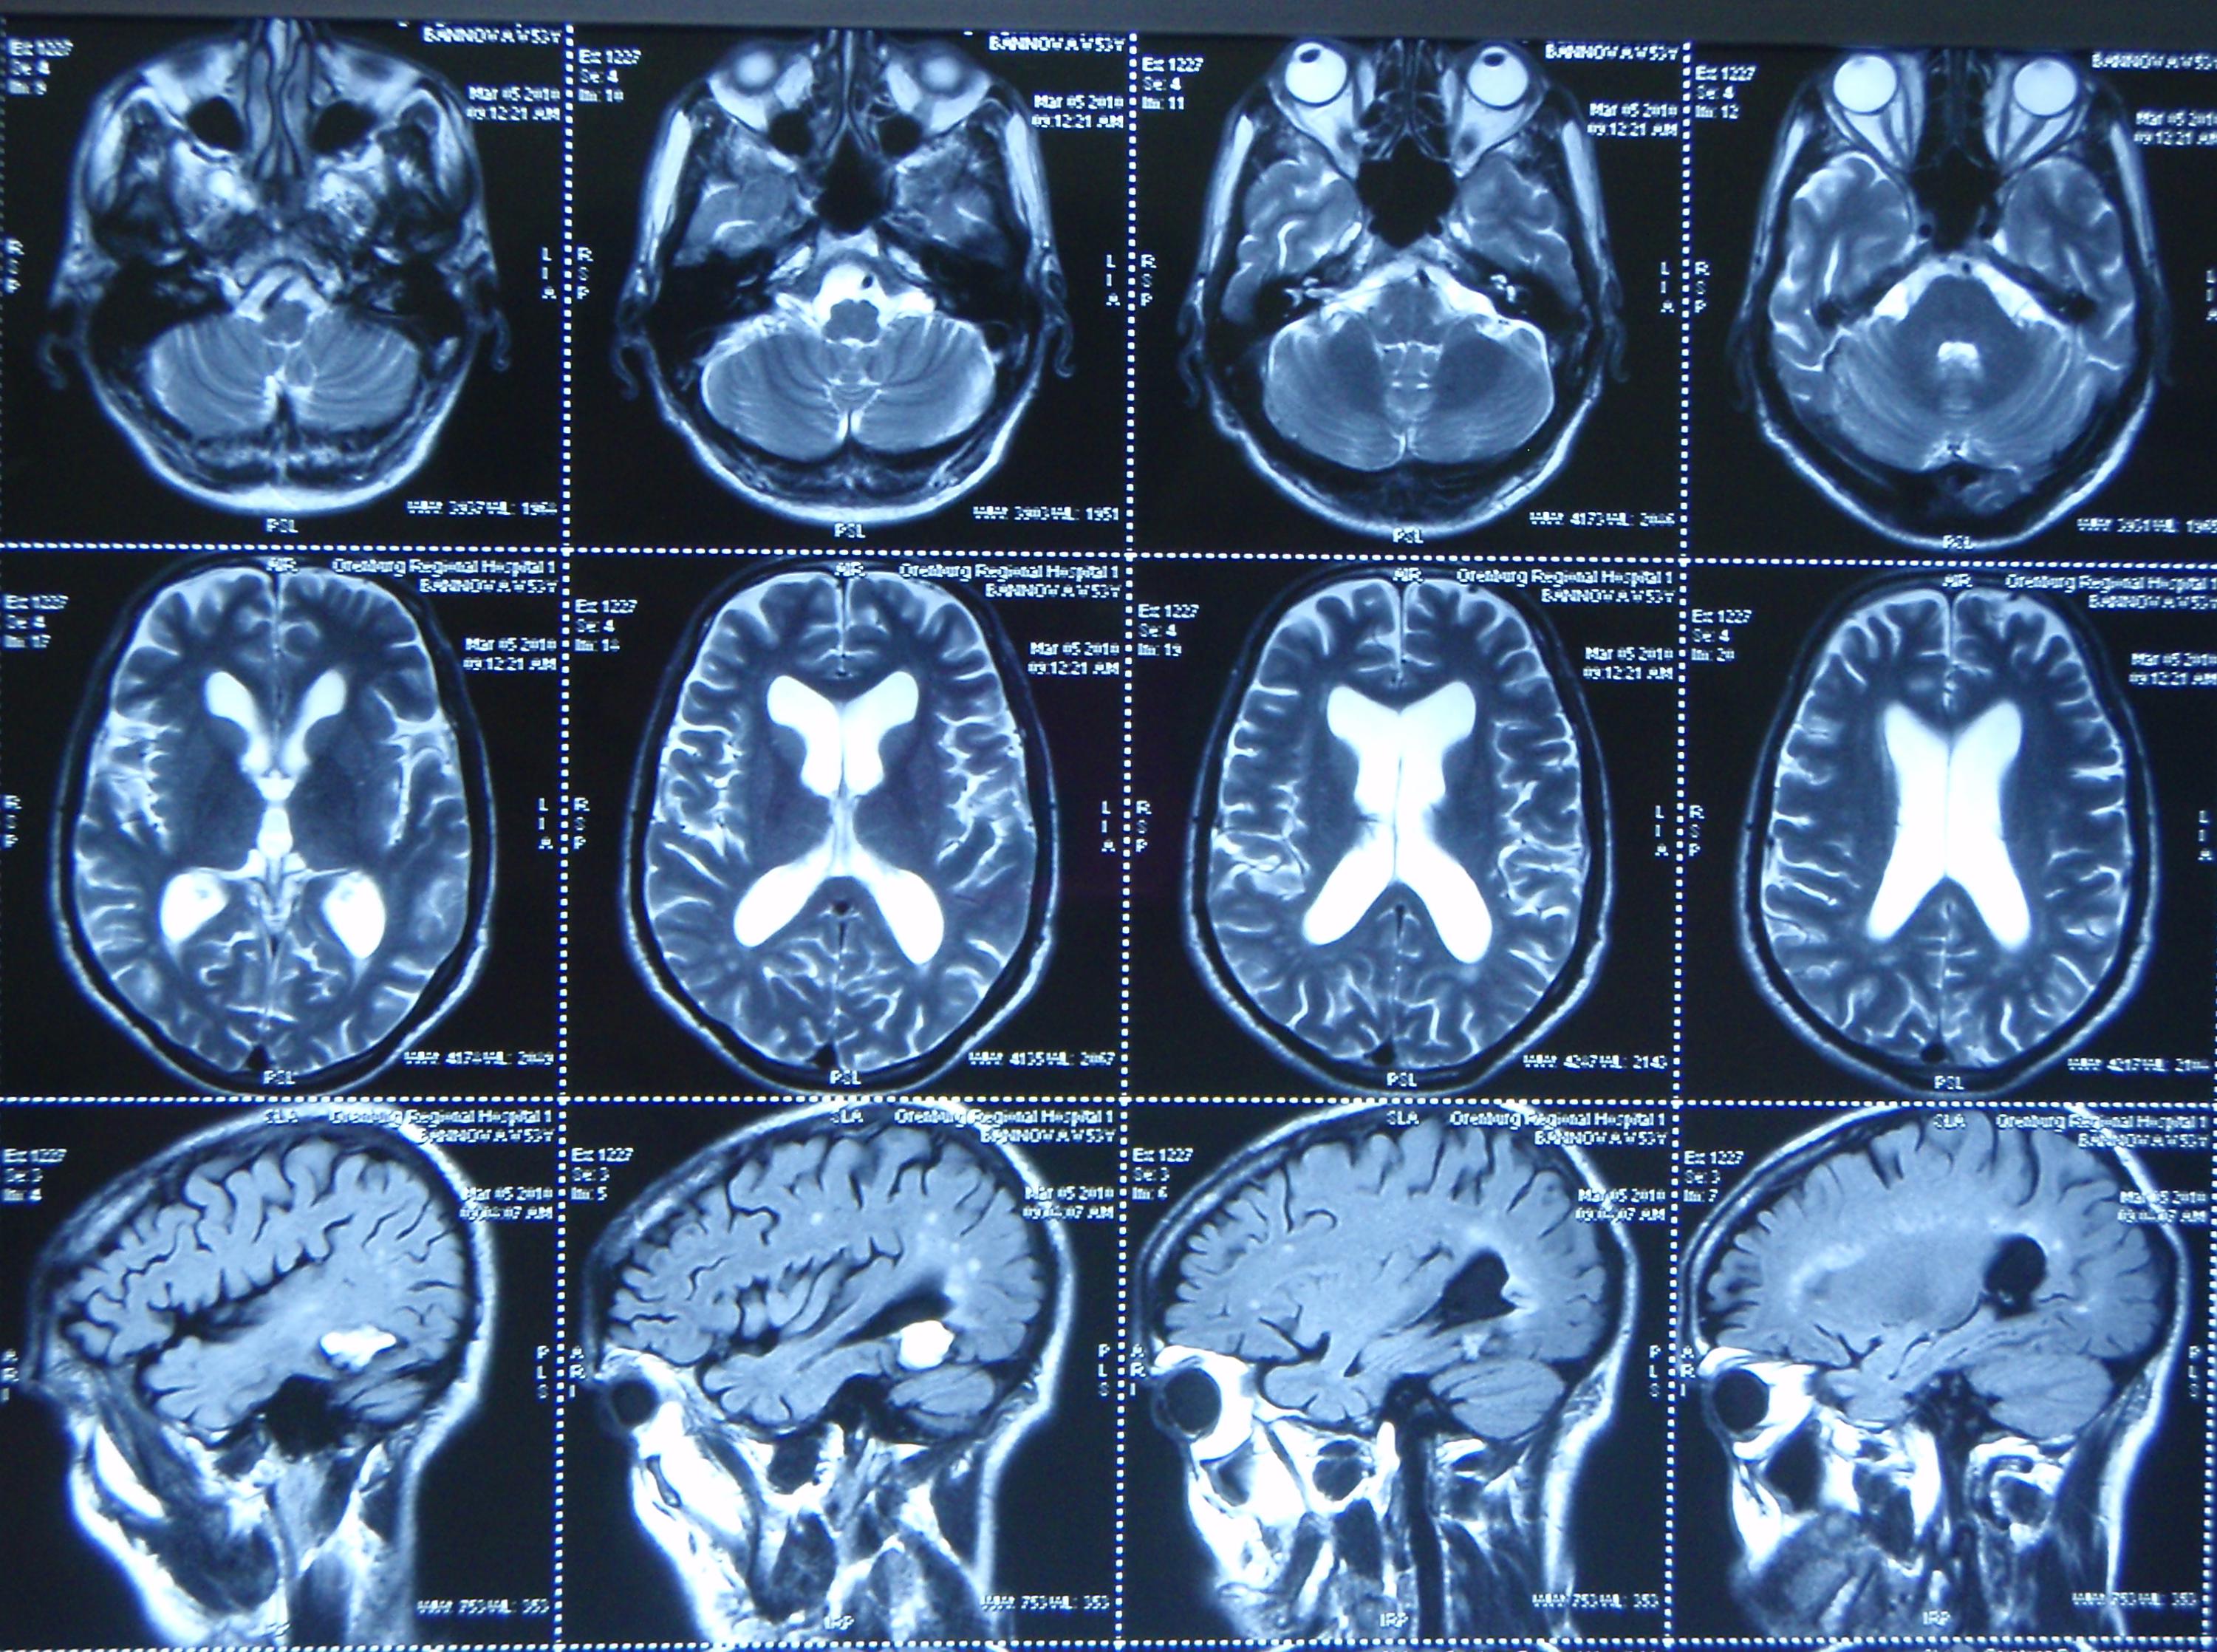 Патологии на мрт. Мрт магнитно-резонансная томография головного мозга. Компьютерная томография кт головного мозга. Кт томограмма головного мозга. Мрт мозга сбоку.